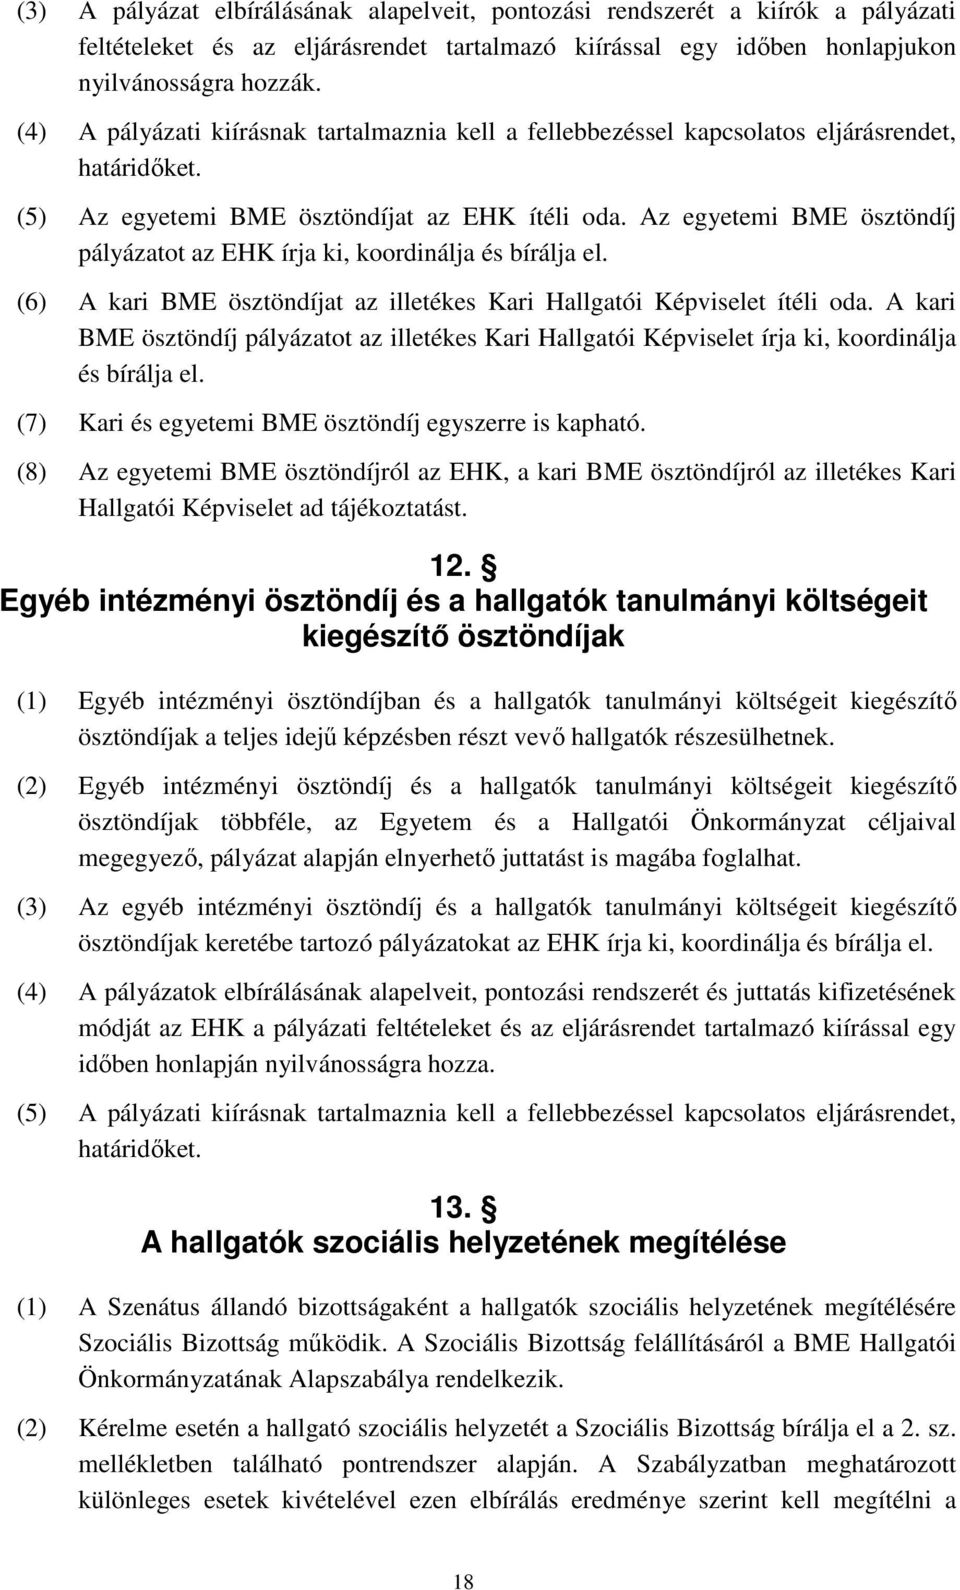 Az egyetemi BME ösztöndíj pályázatot az EHK írja ki, koordinálja és bírálja el. (6) A kari BME ösztöndíjat az illetékes Kari Hallgatói Képviselet ítéli oda.